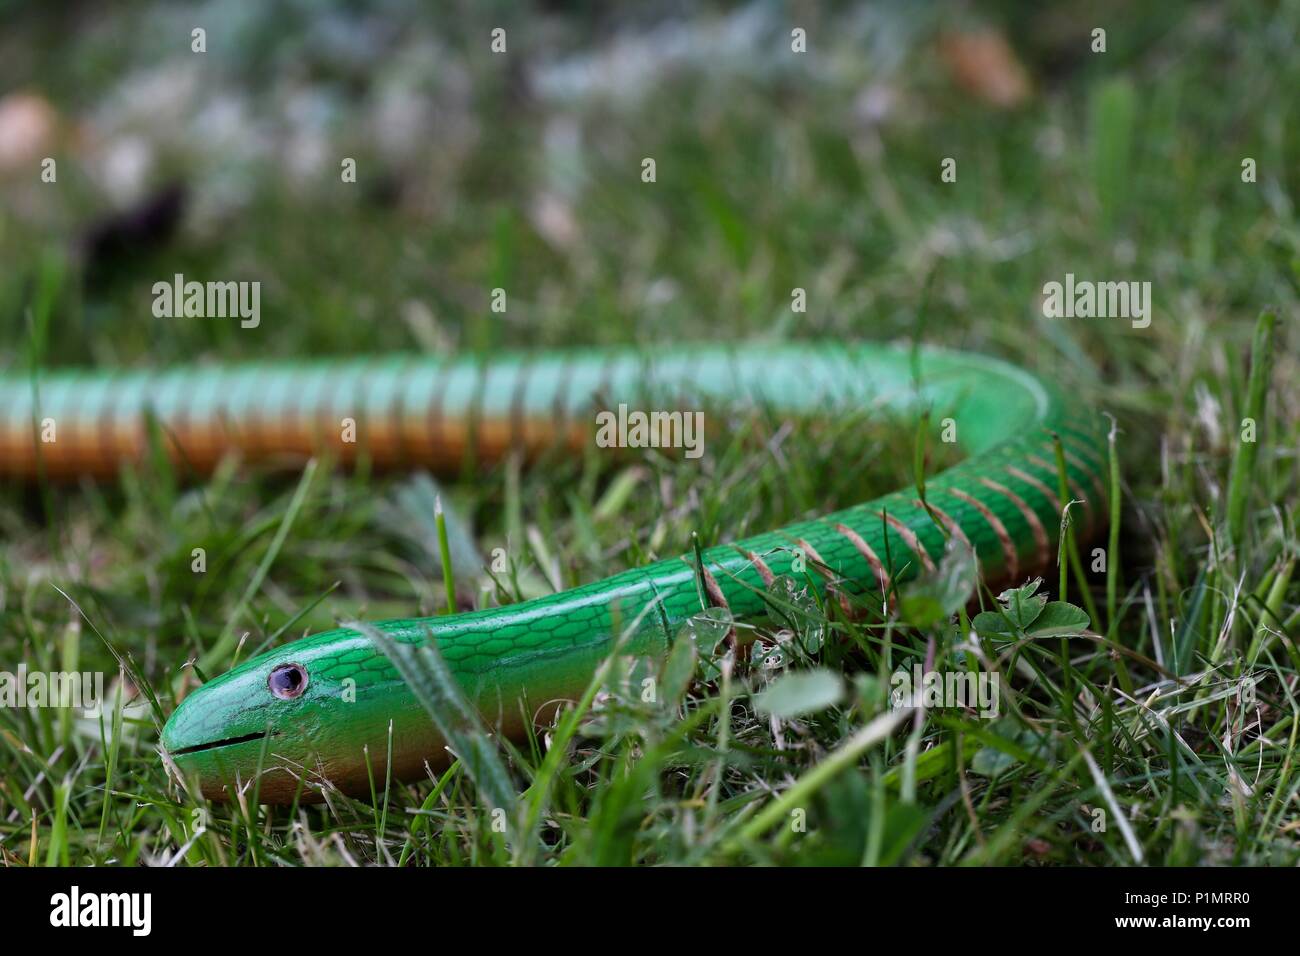 La serpiente en la hierba. Un niño del juguete de madera moldeables serpiente escondidos en la hierba en el jardín. Foto de stock